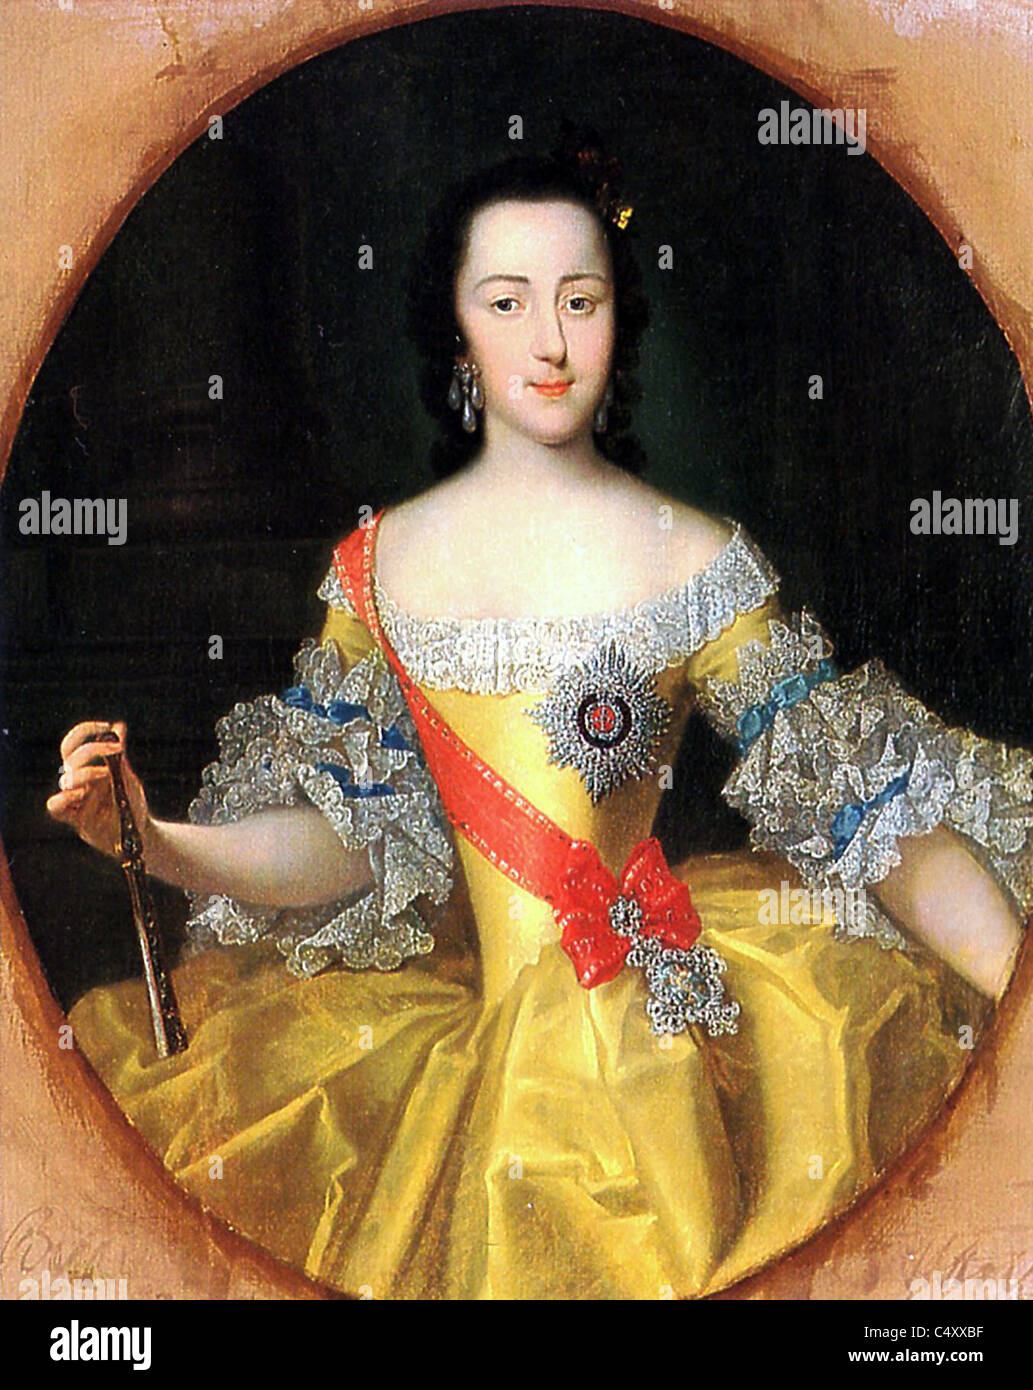 La Gran Duquesa Ekaterina Alexeevna (más tarde emperatriz Catalina II de Rusia/Catalina la Grande) Foto de stock